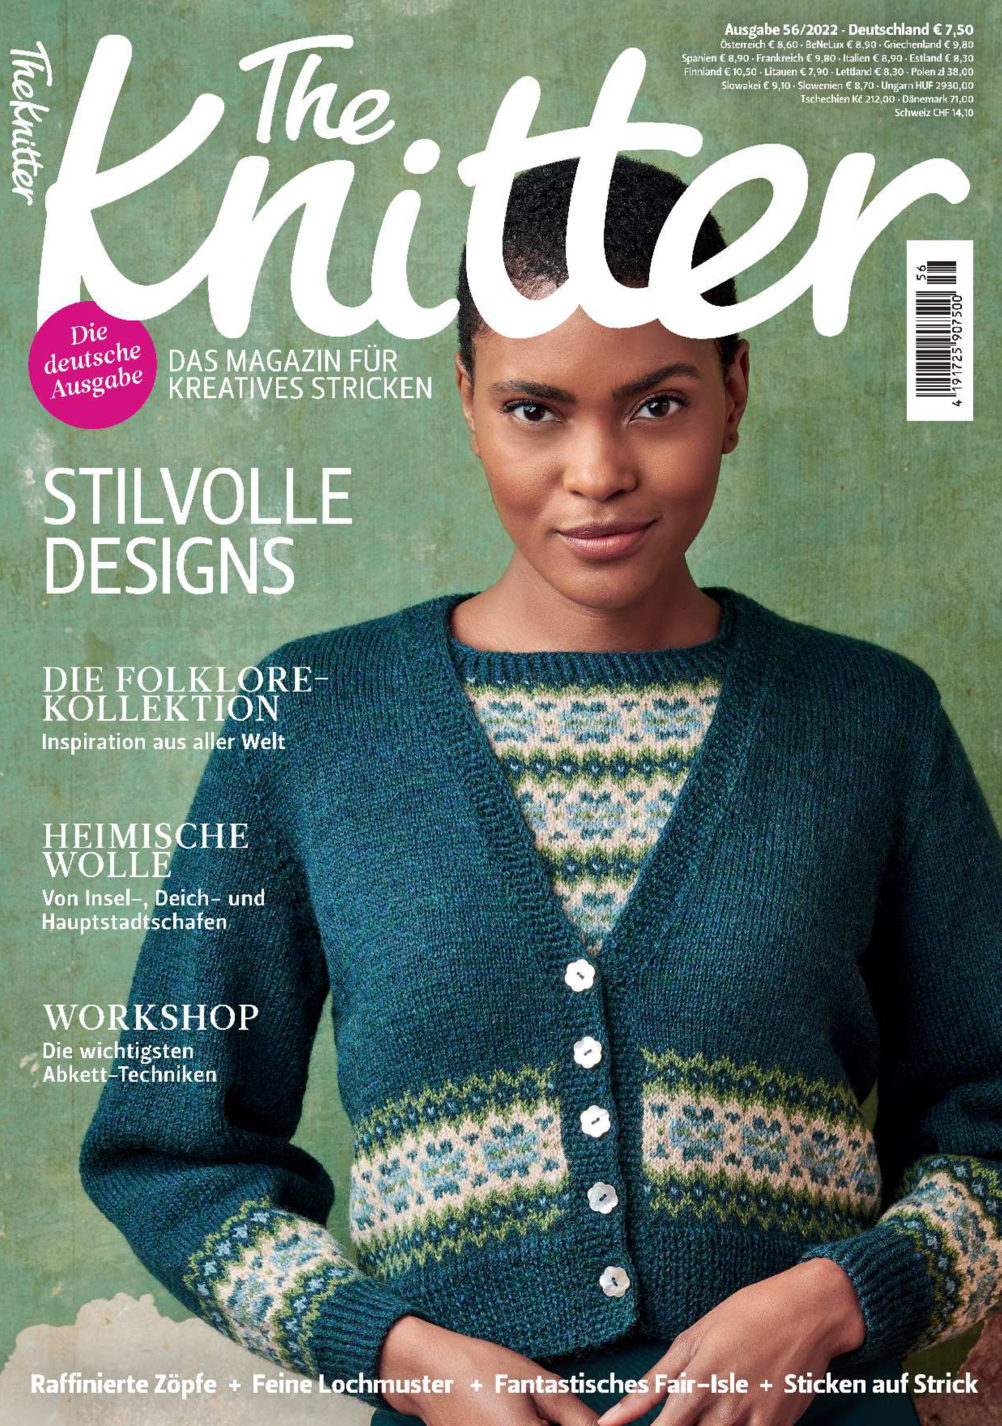 E-Paper: The Knitter 56/2022 - Stilvolle Designs